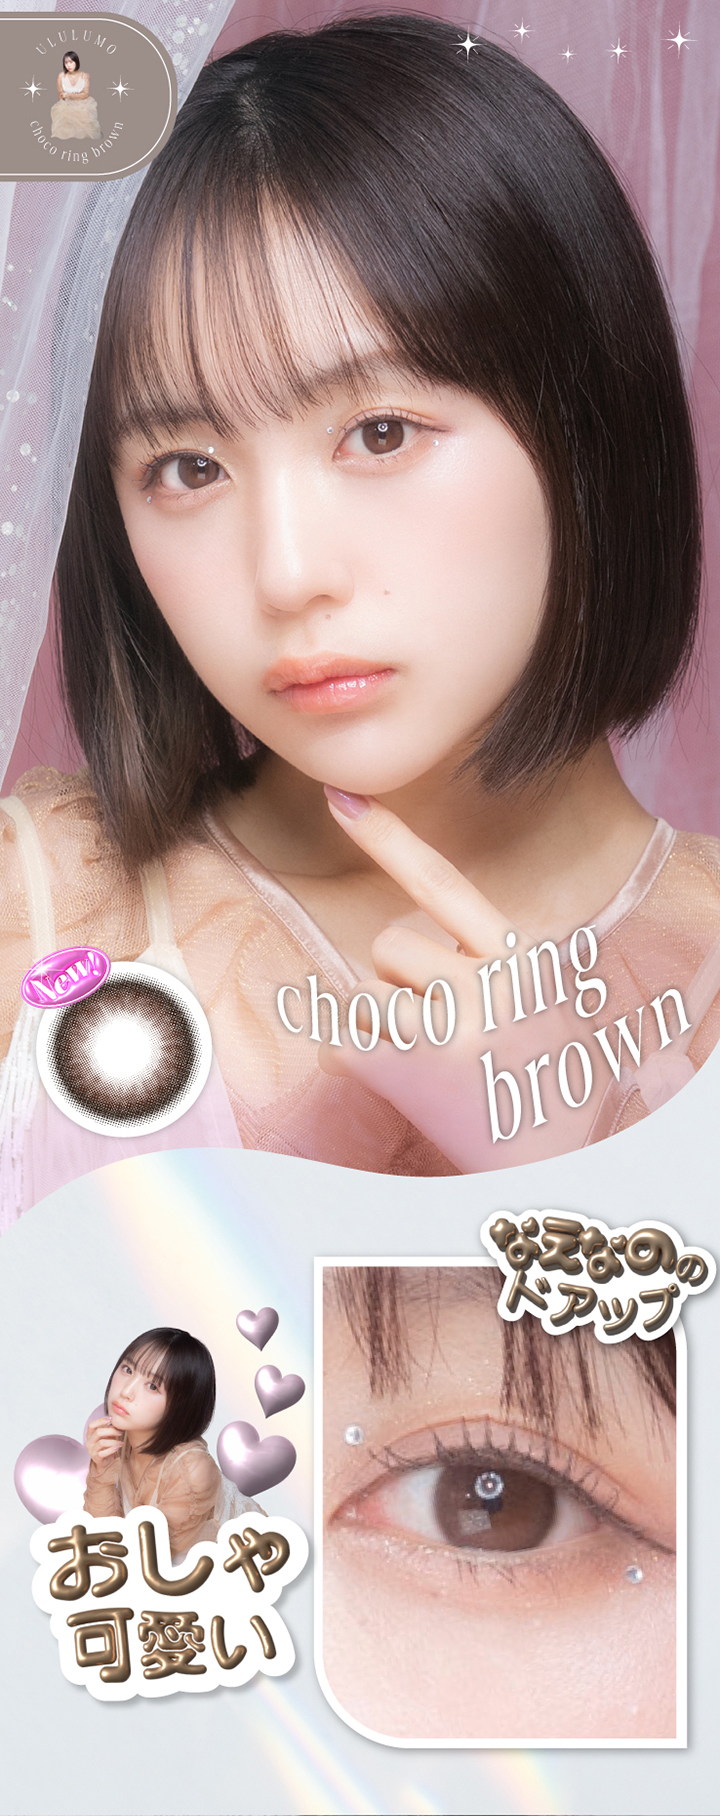 ȂȂ̃vf[XJRwULULUMOiEjx- `ROuE [Choco ring brown]